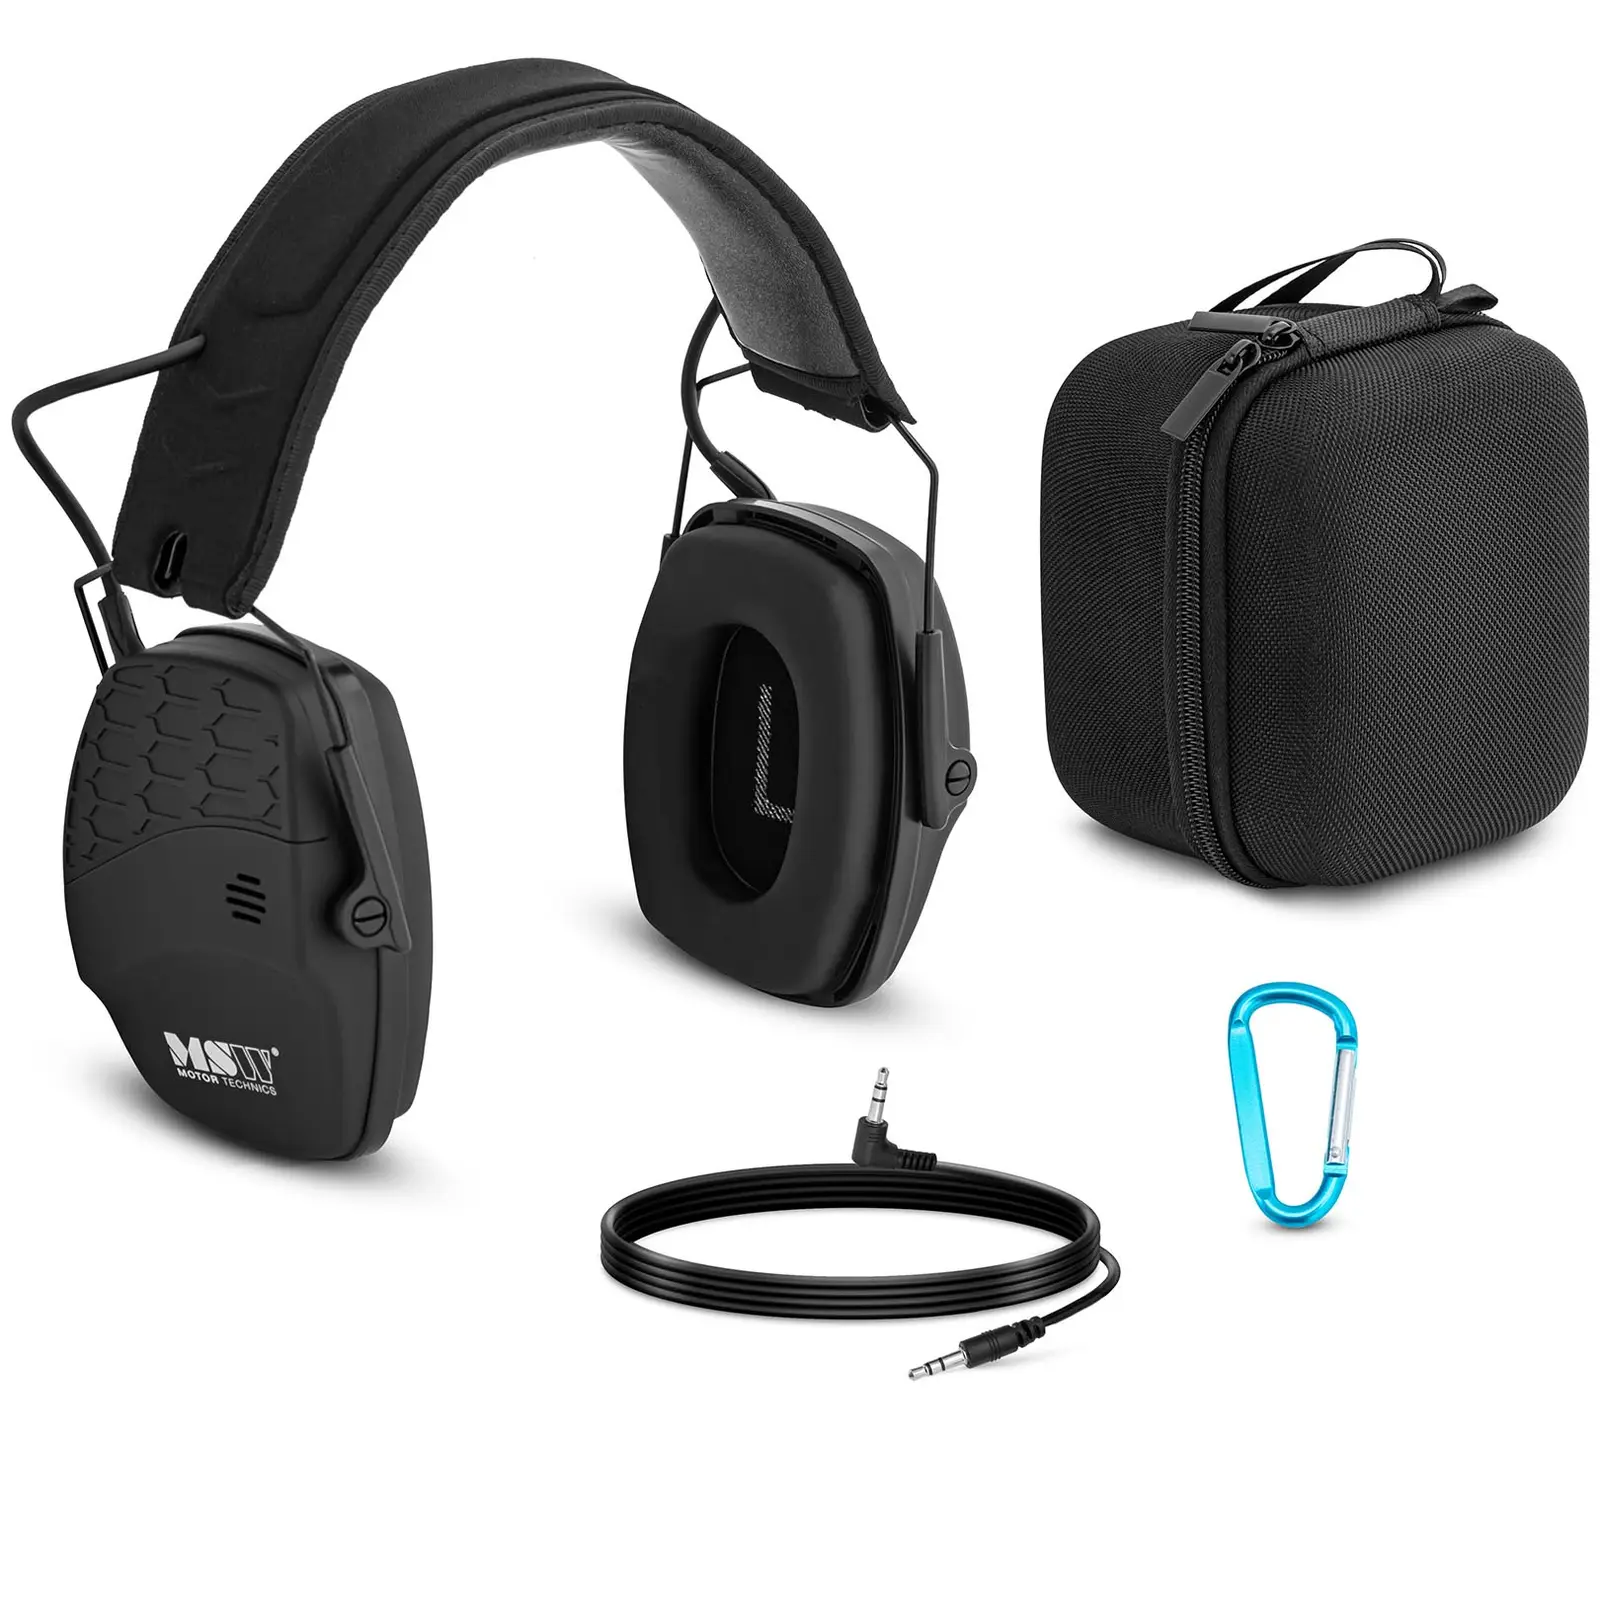 Ακουστικά ακύρωσης θορύβου Bluetooth - Δυναμικό εξωτερικό έλεγχο θορύβου - Μαύρο